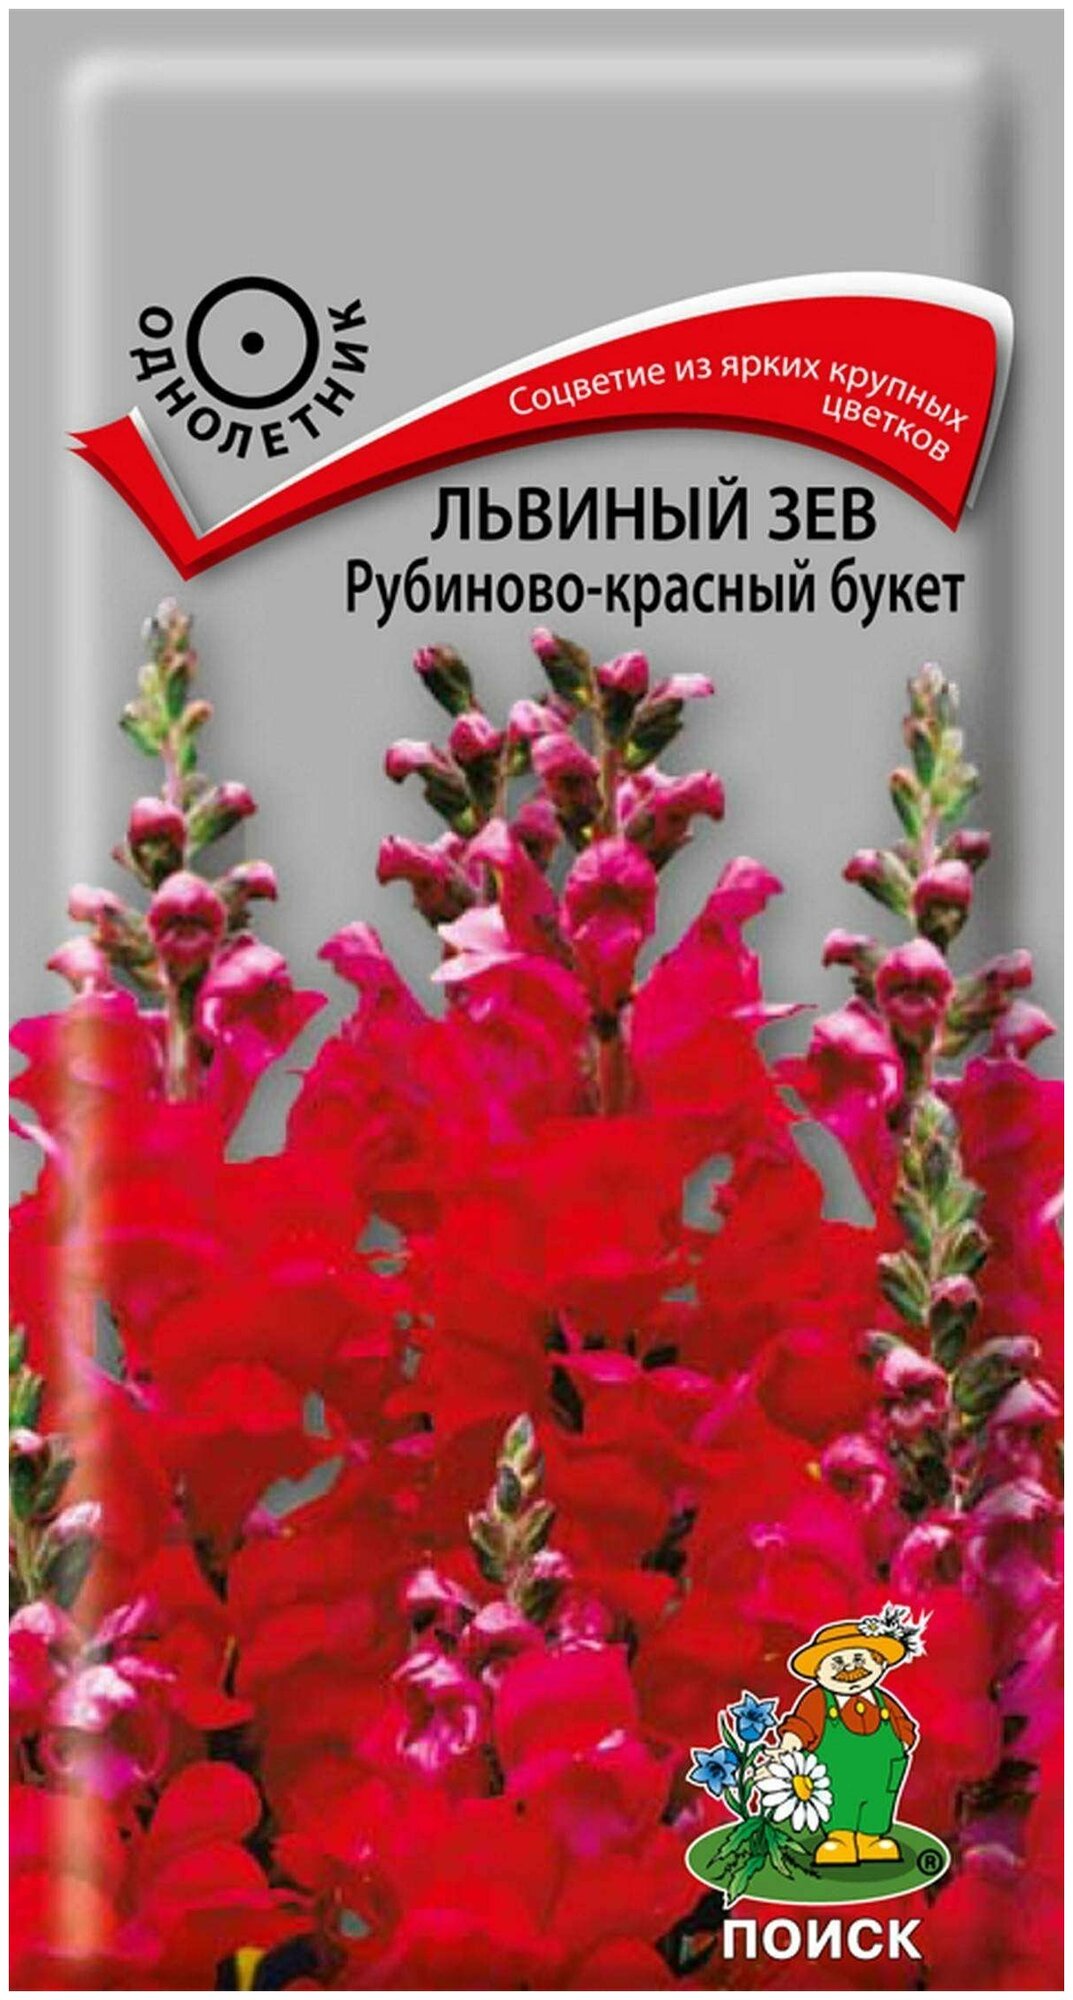 Антирринум (Львиный зев) Рубиново-красный букет 0,1г Одн 90см (Поиск)